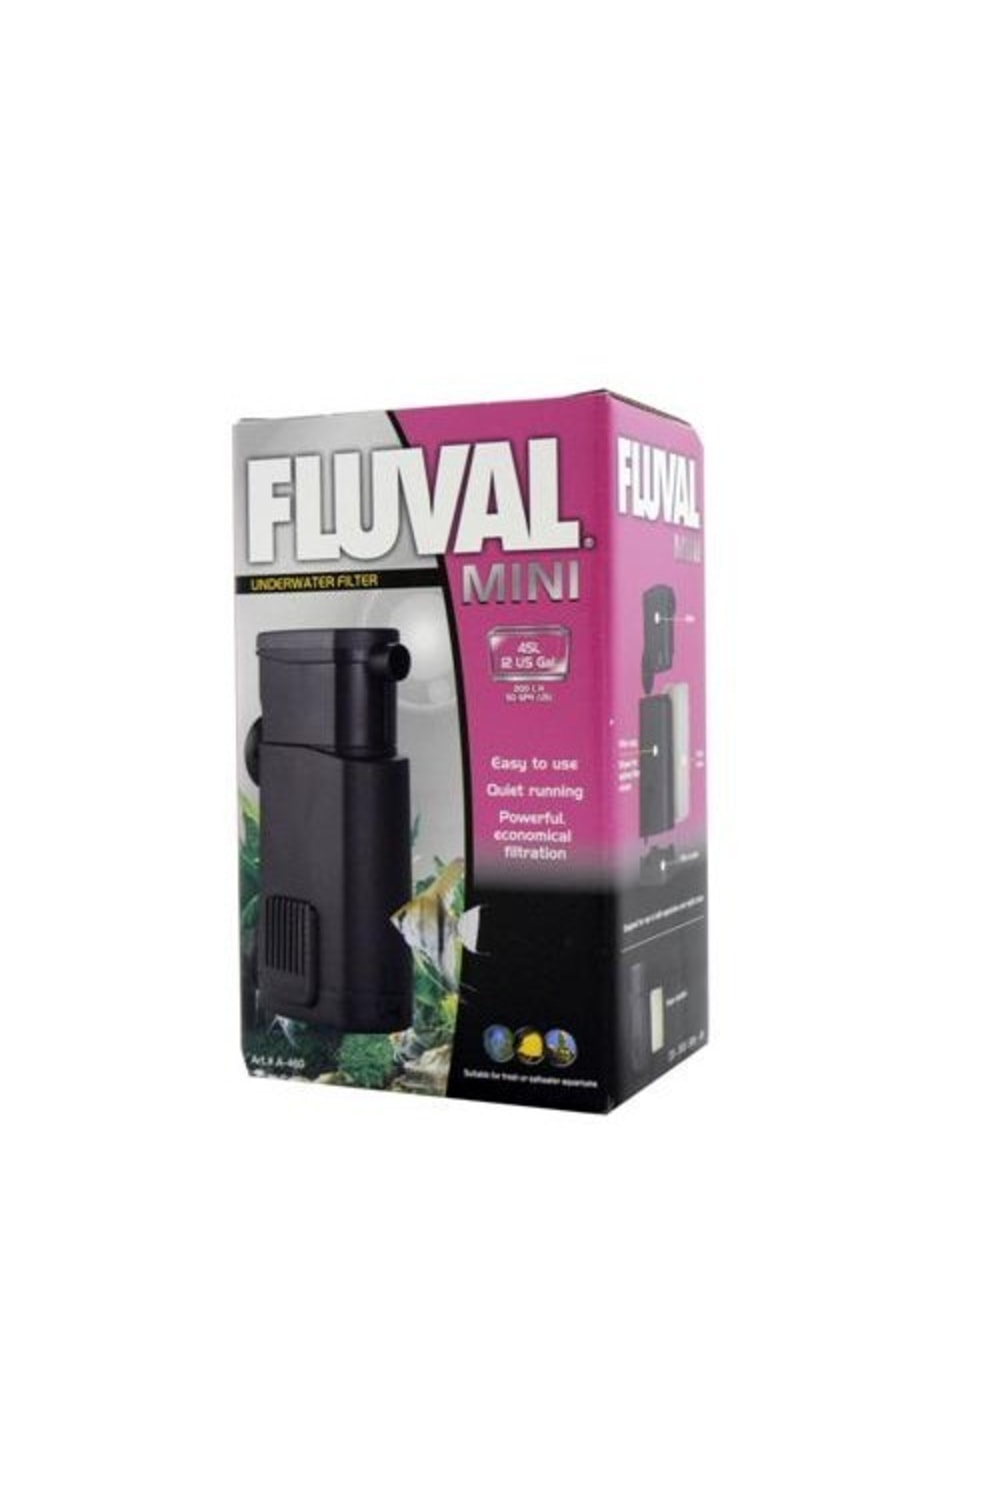 Fluval Mini Underwater Power Filter (Black) (One Size)